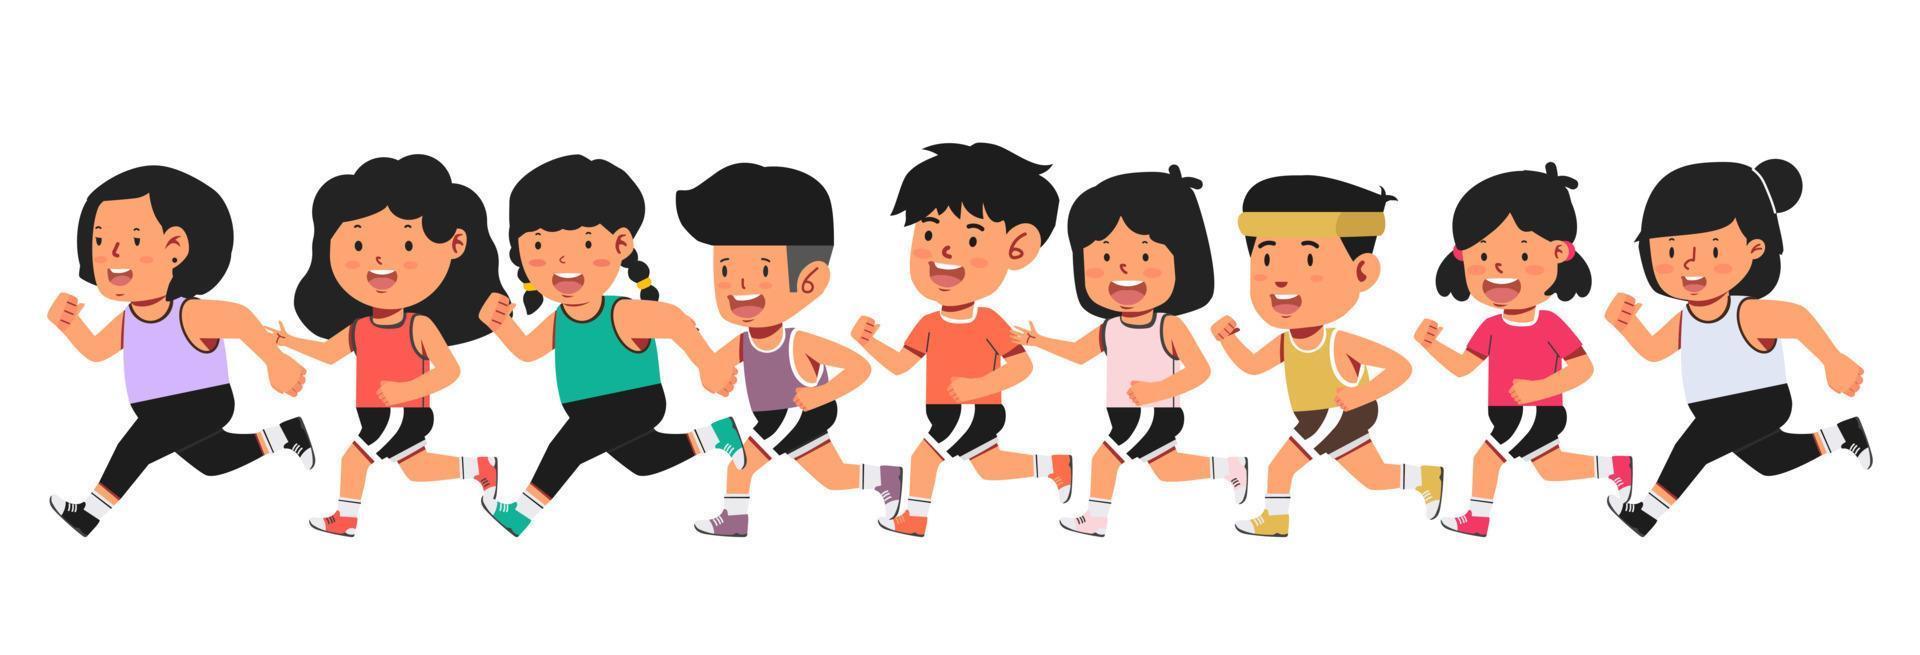 unge bär enhetlig för springa maraton lopp grupp uppsättning vektor